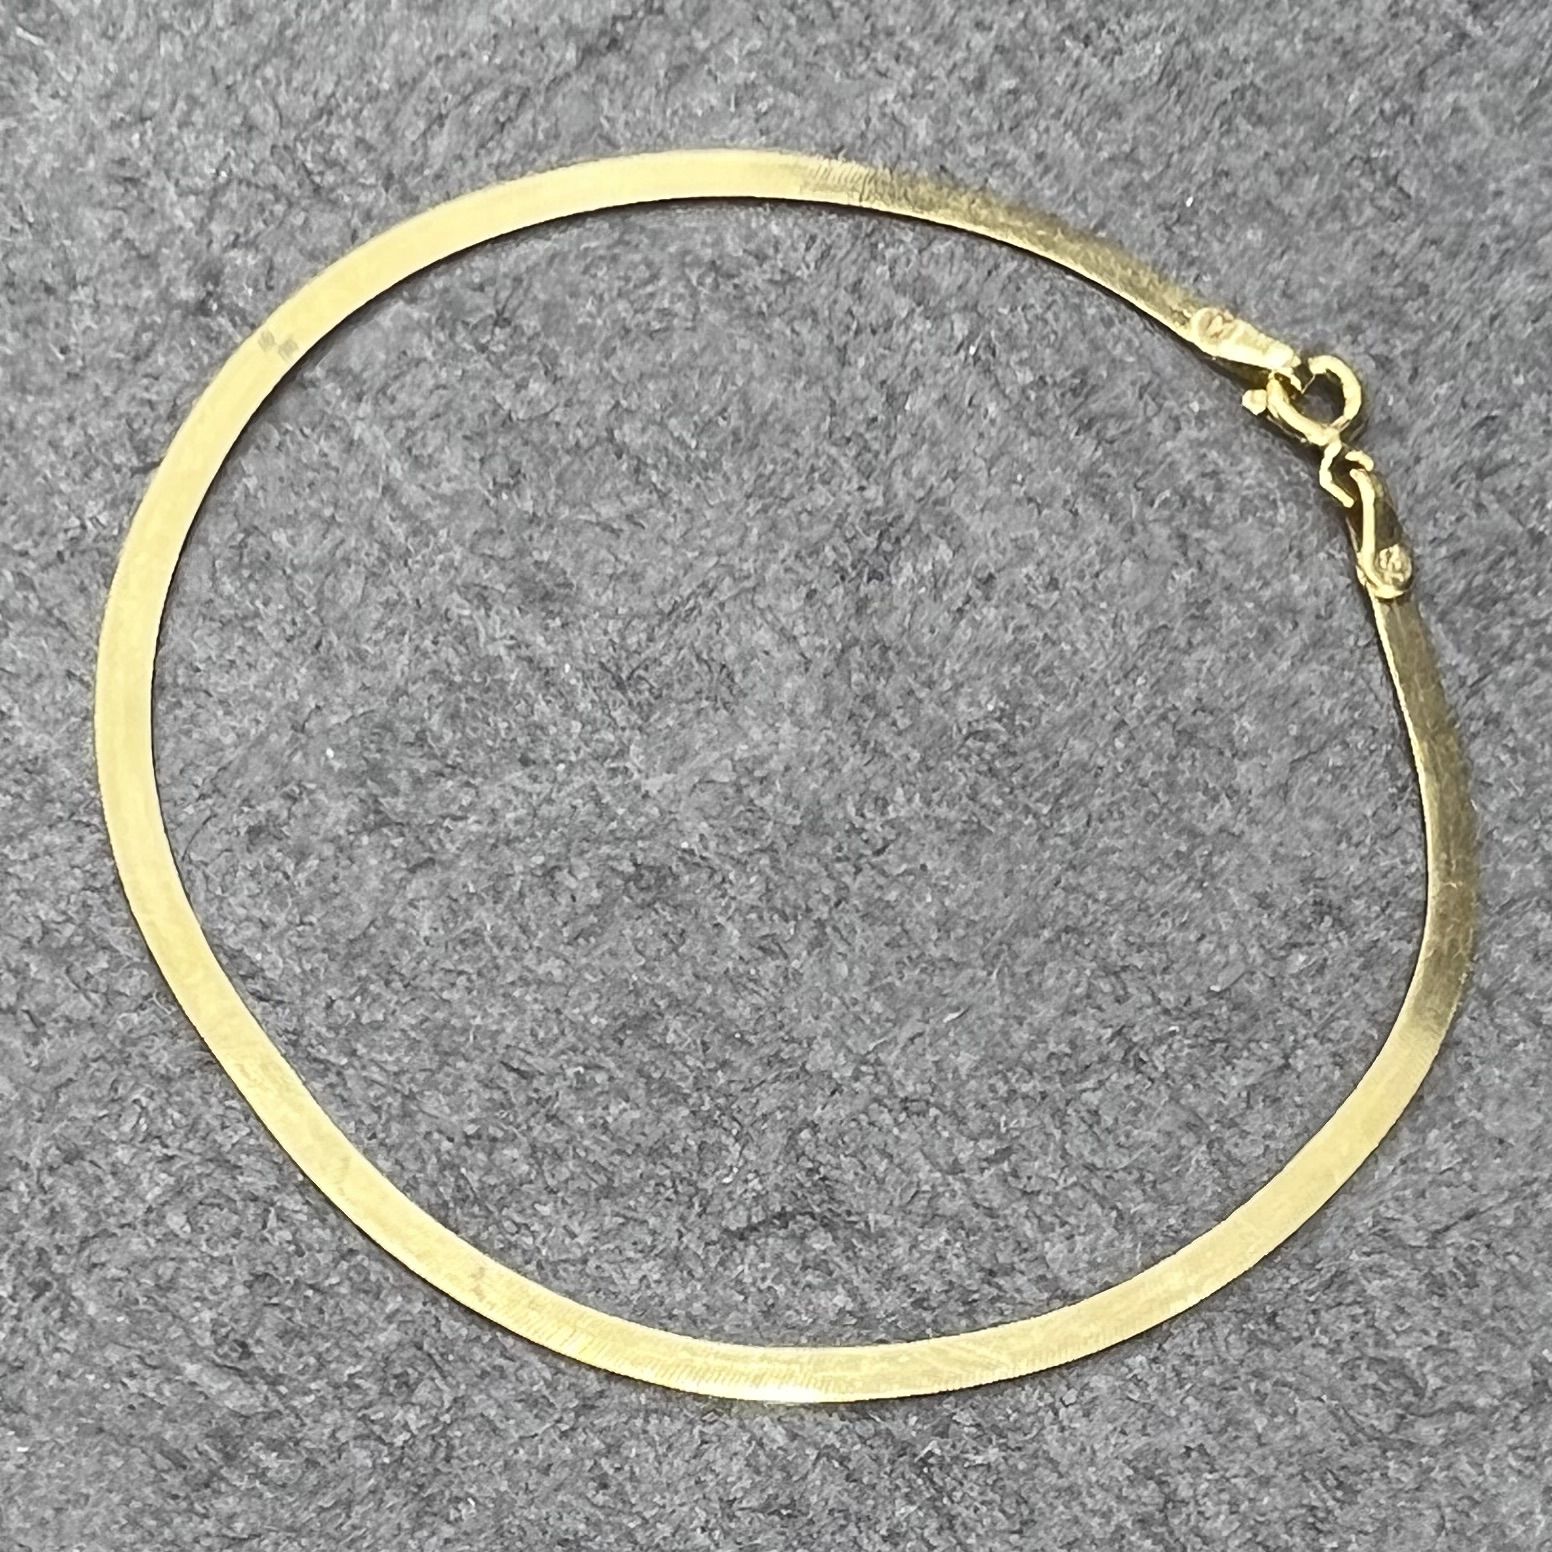 دستبند طلا 18 عیار زنانه دوست خوب مدل  هرینگبون کد dk158 -  - 5